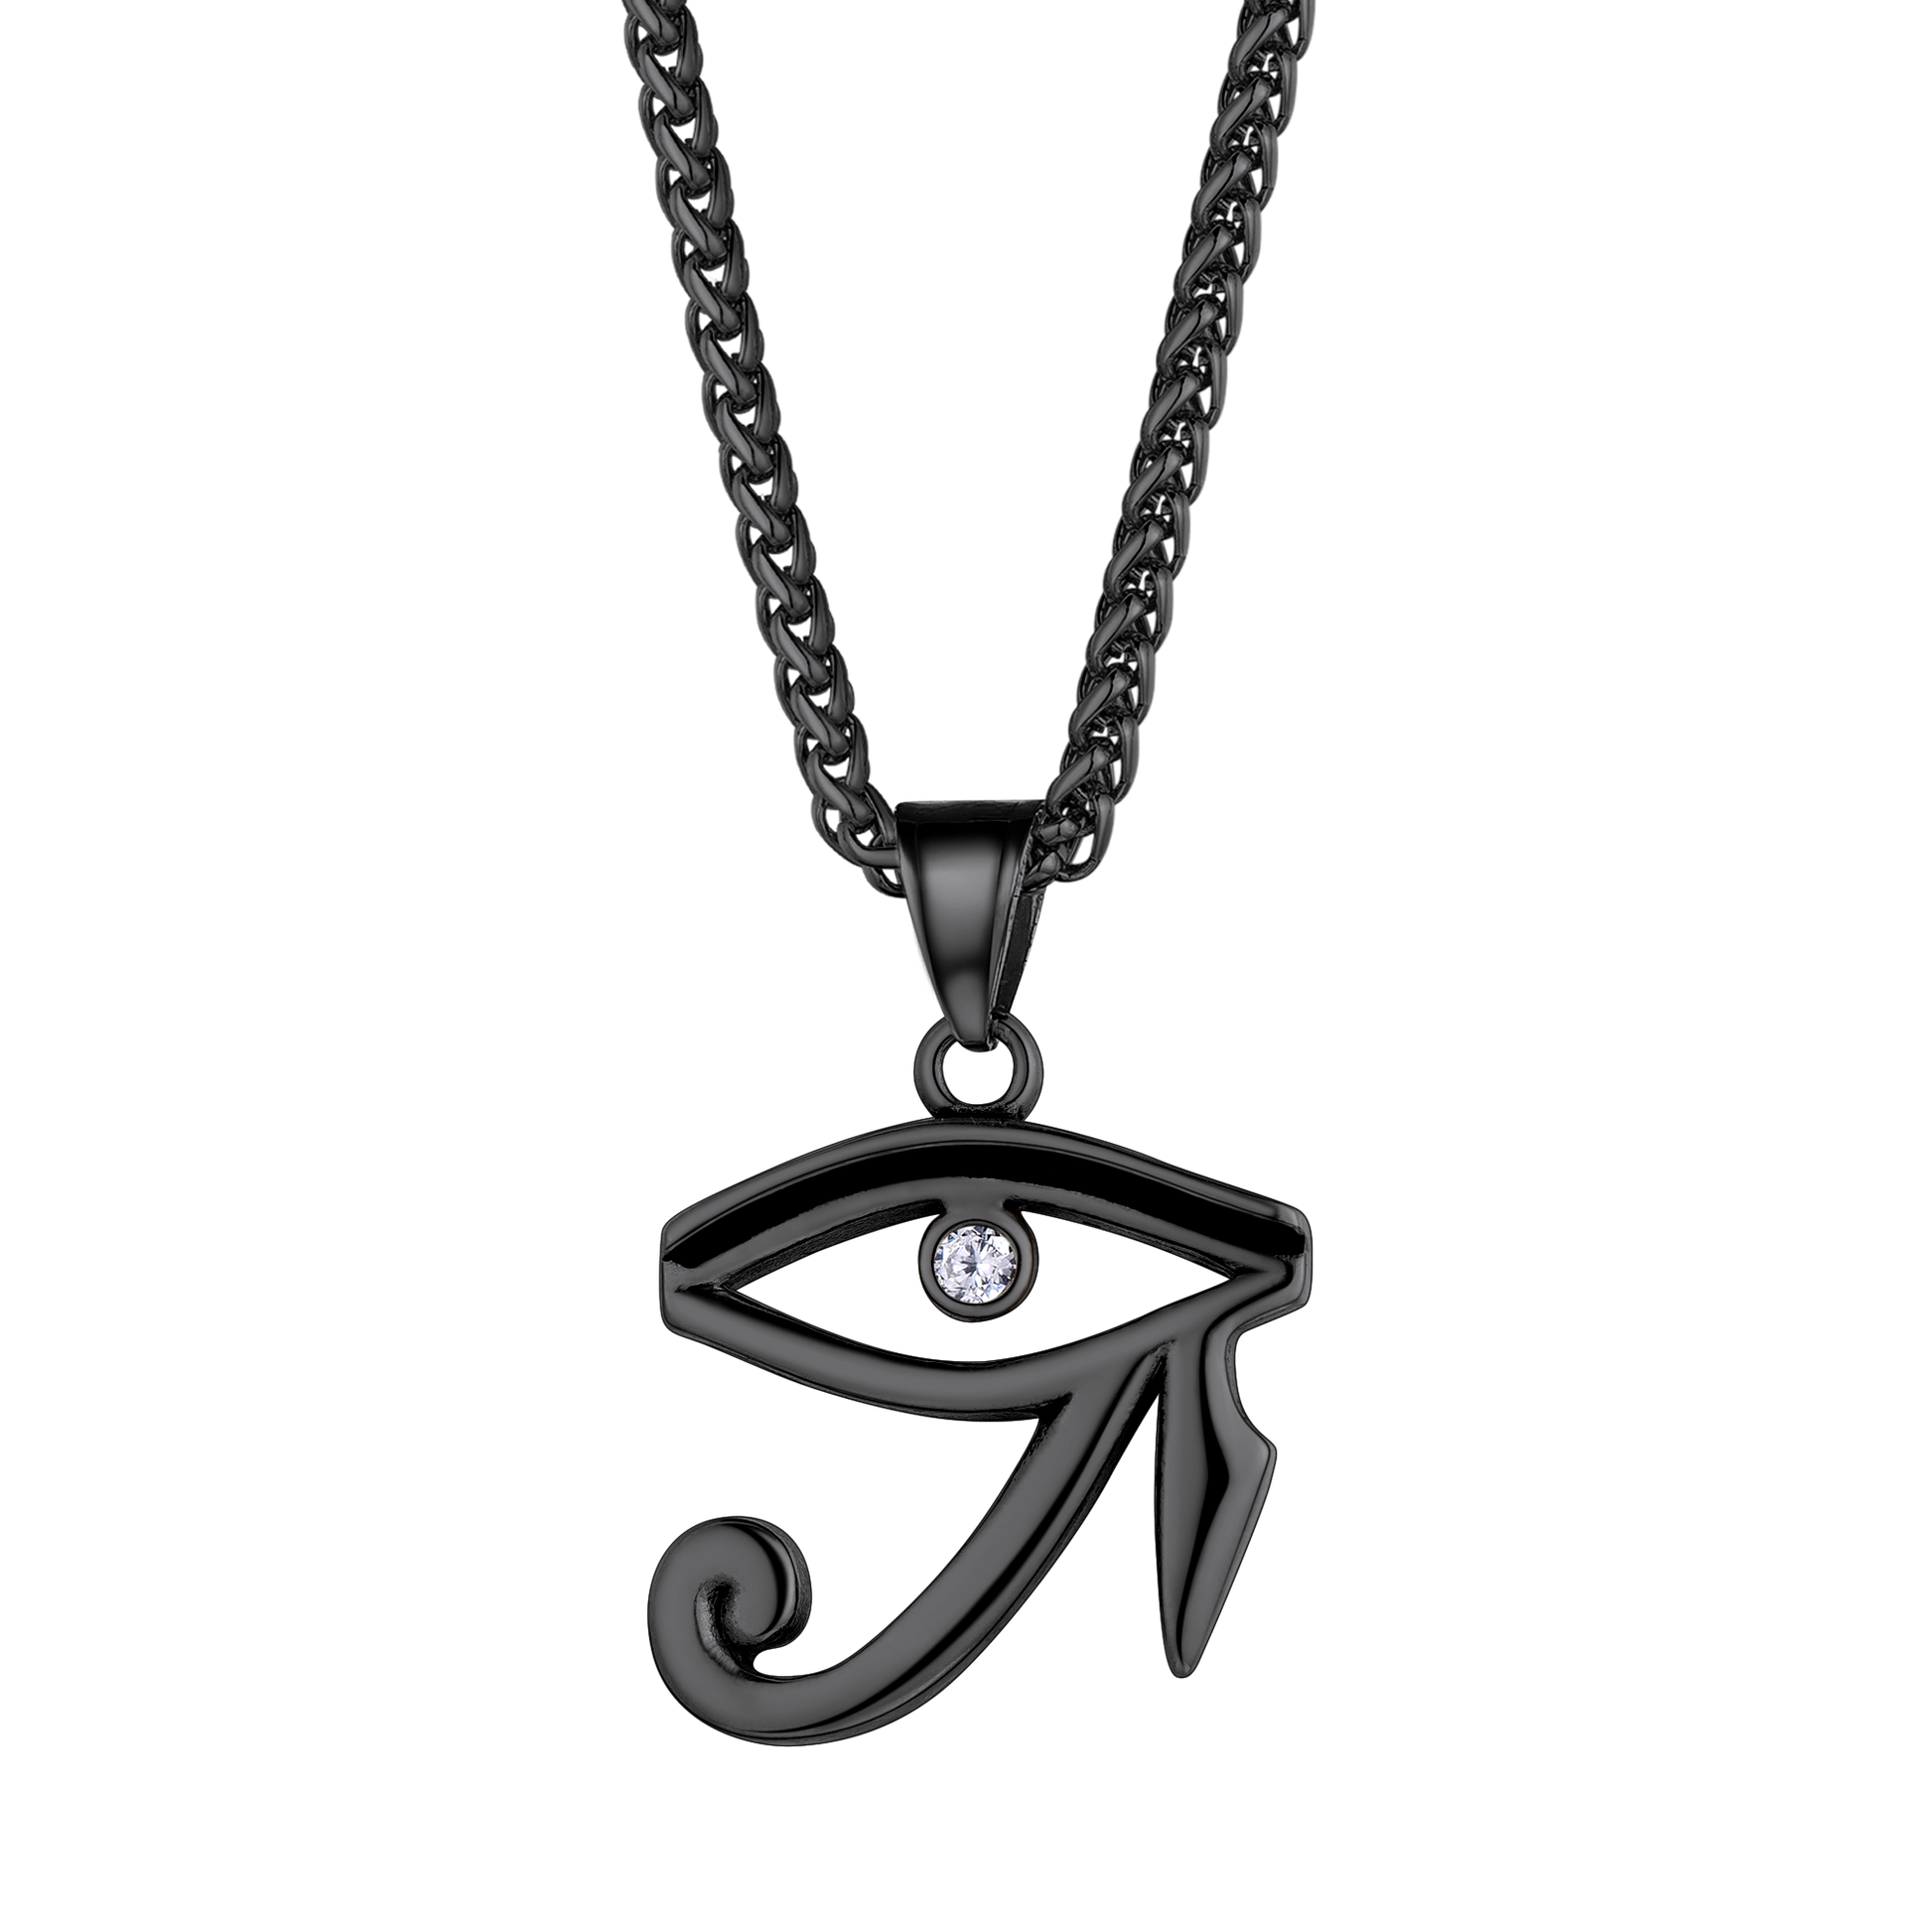 FaithHeart Eye of Horus Necklace Egyptian Amulet Pendant FaithHeart